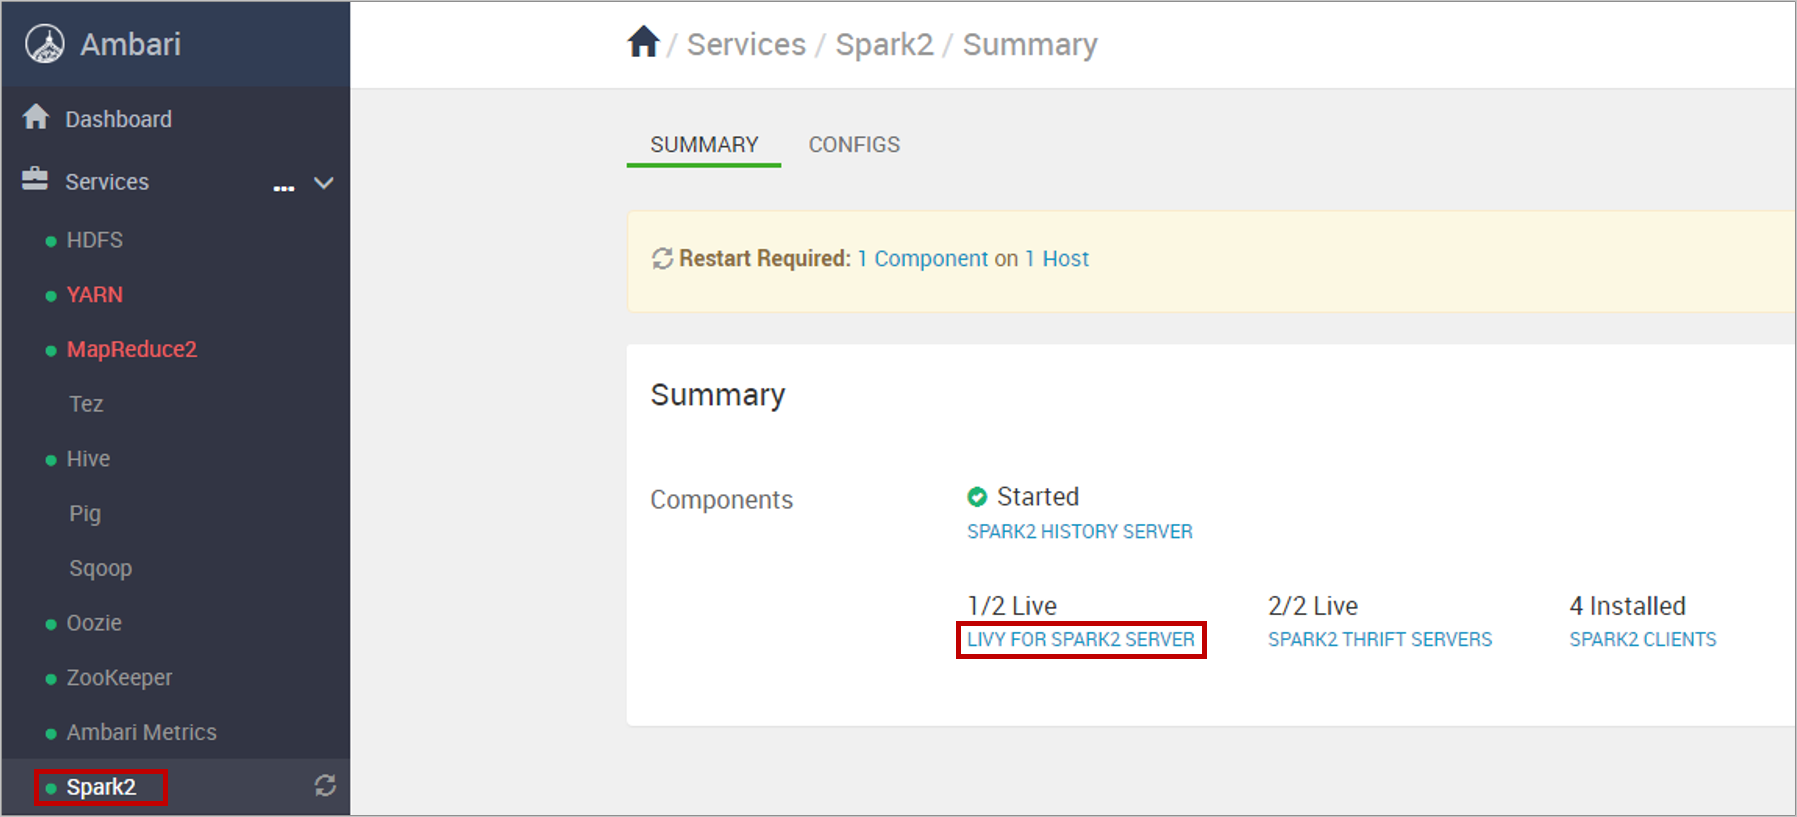 Select Livy for Spark2 Server